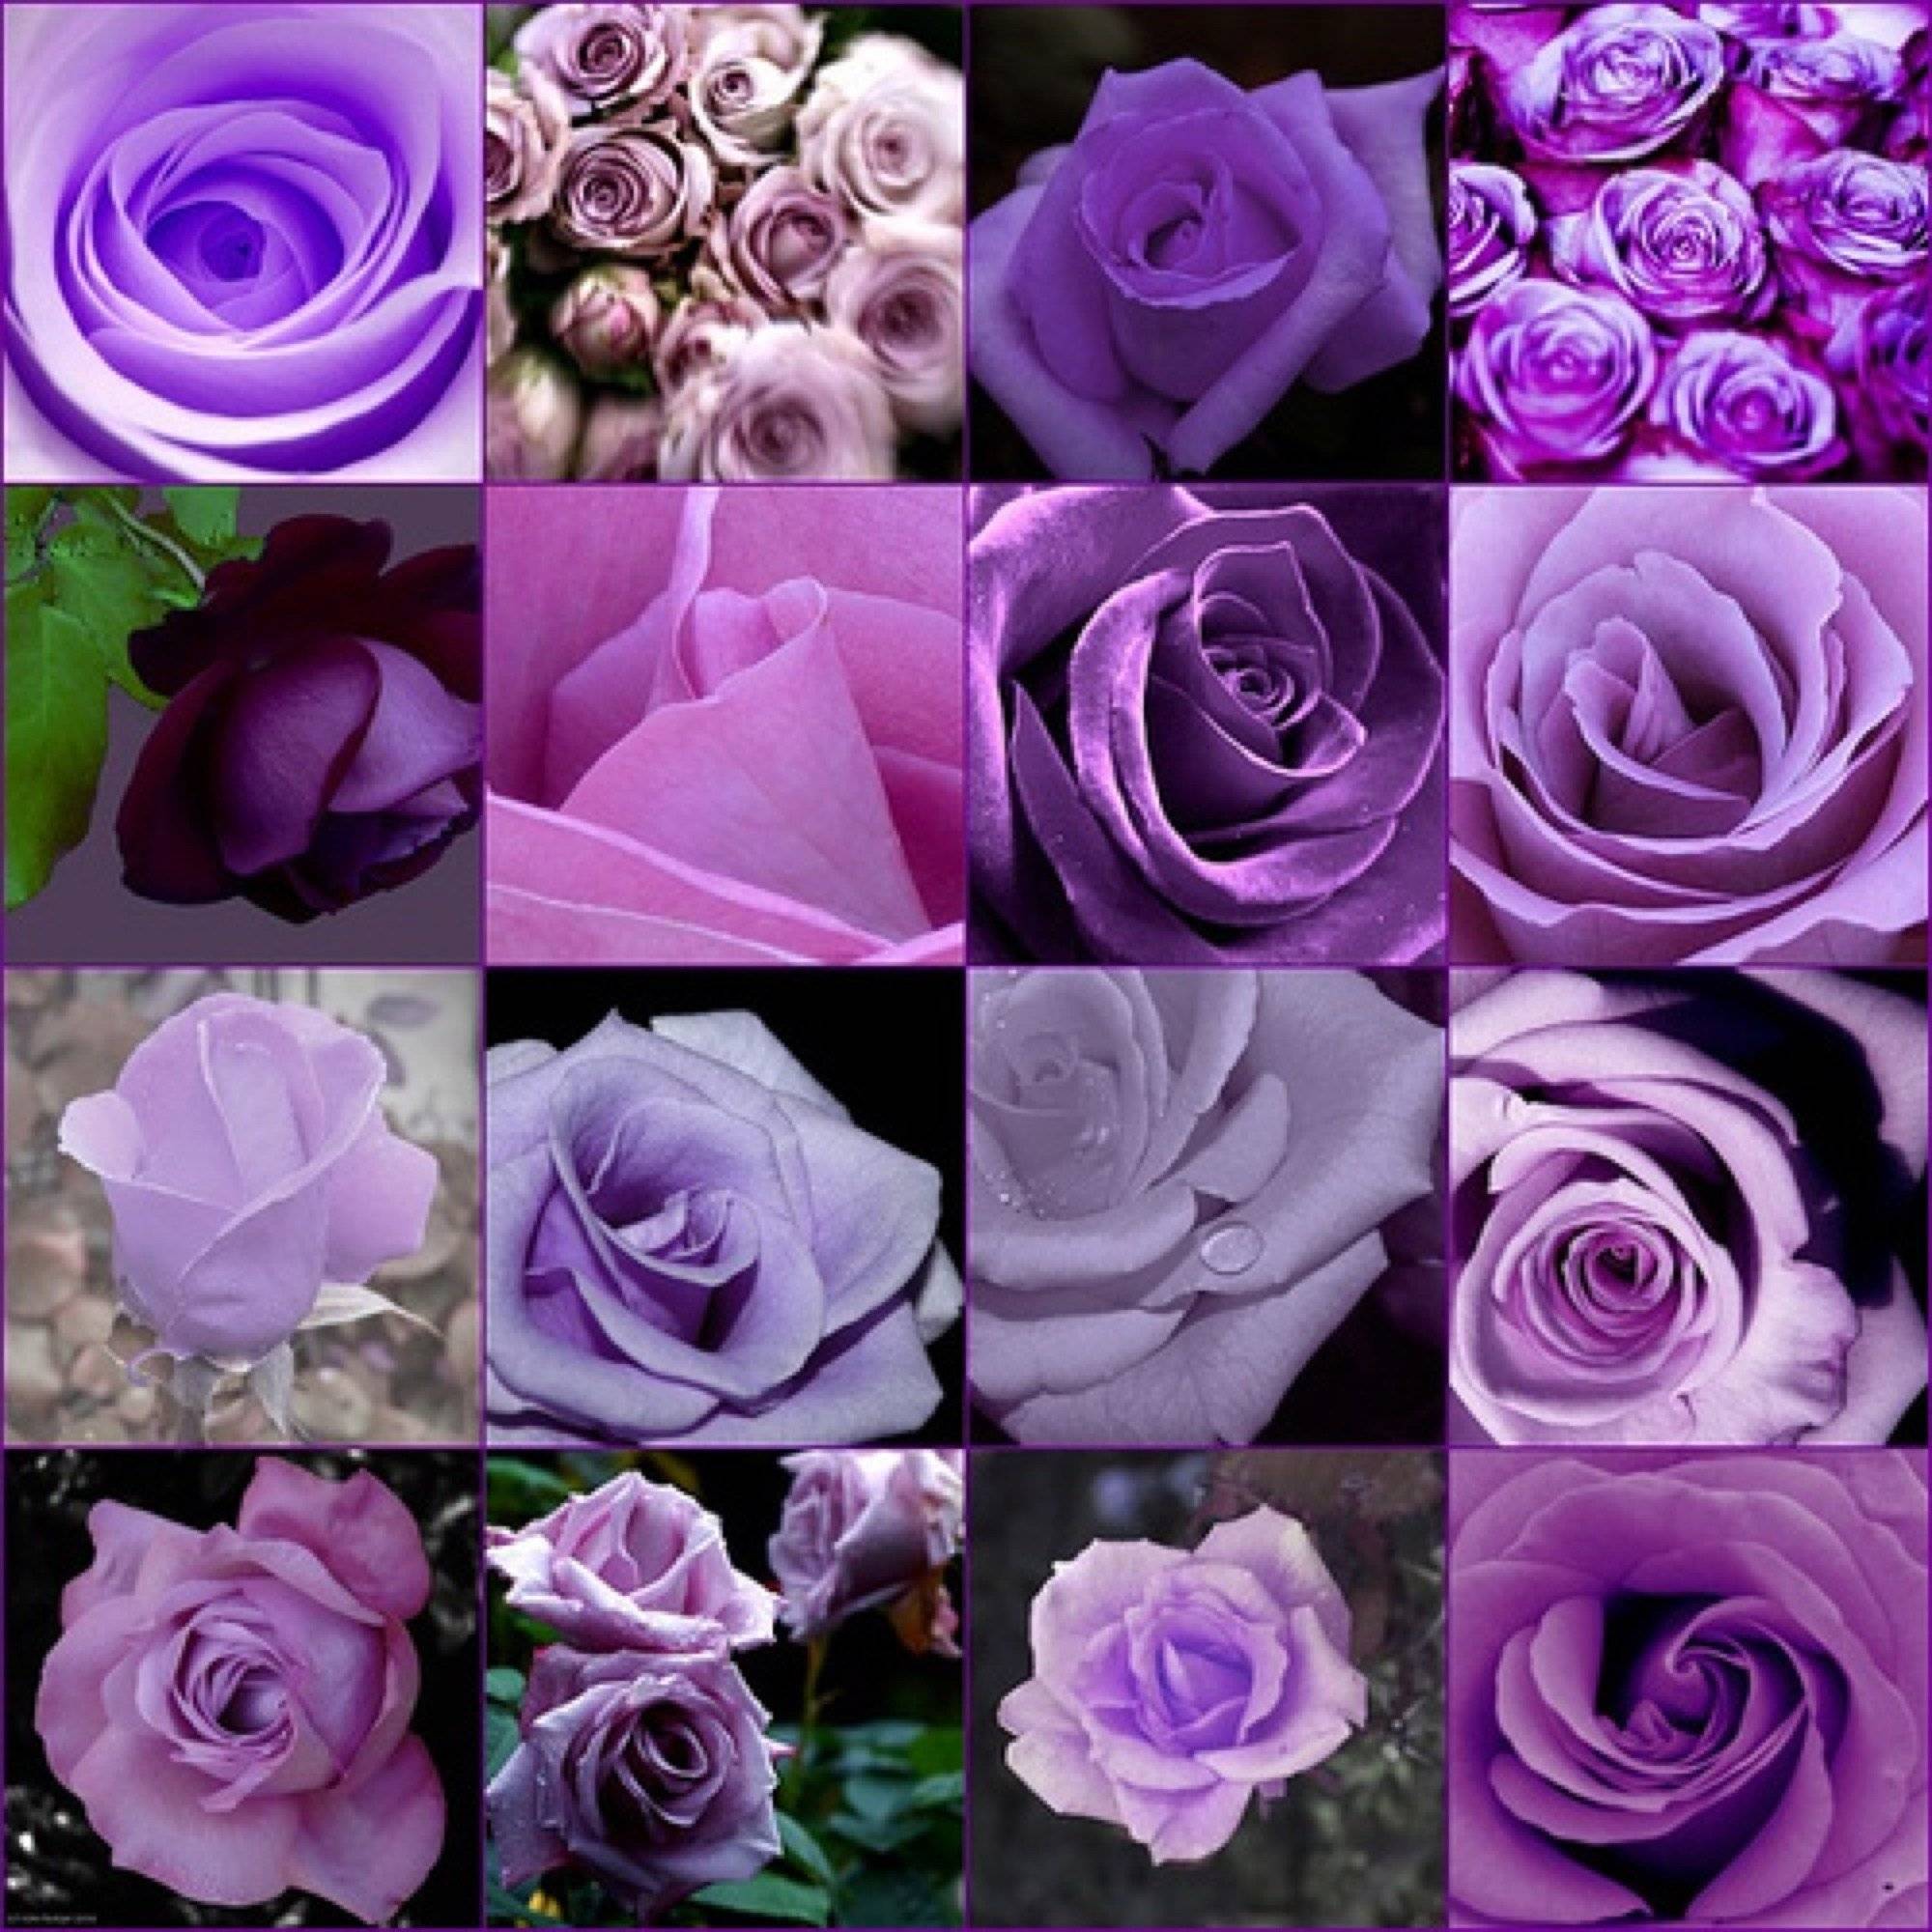 Царственная роскошь фиолетовых роз в вашем саду